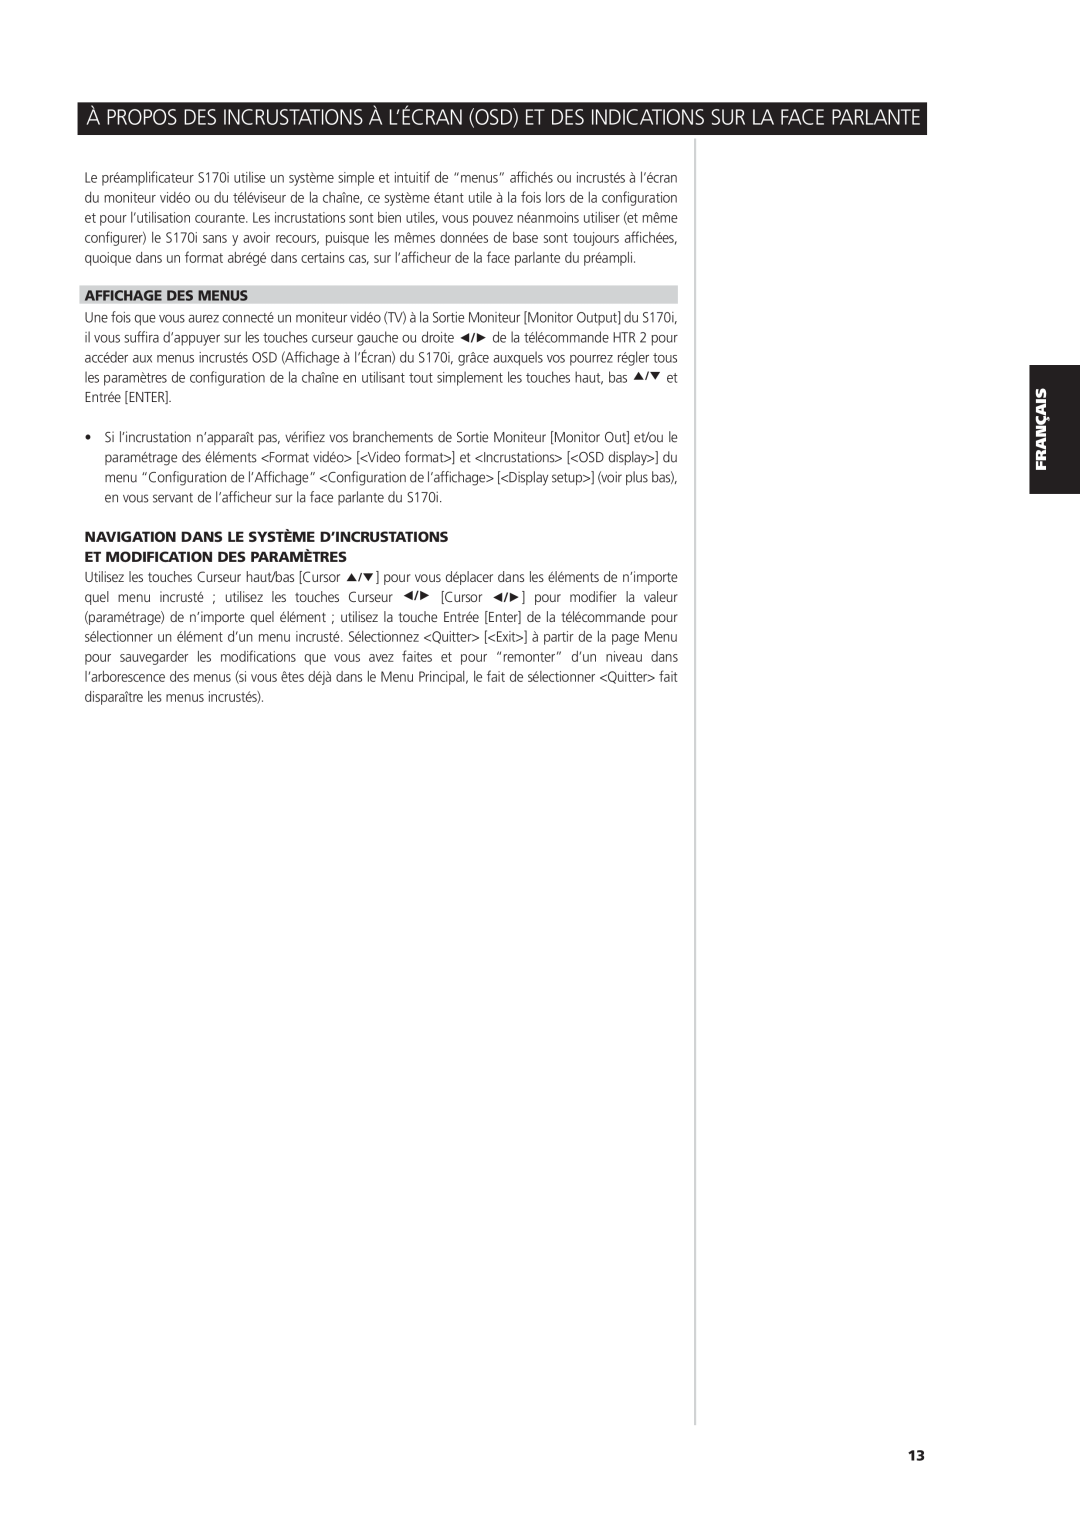 NAD S170iAV owner manual Affichage Des Menus, Navigation Dans Le Système D’Incrustations, Et Modification Des Paramètres 